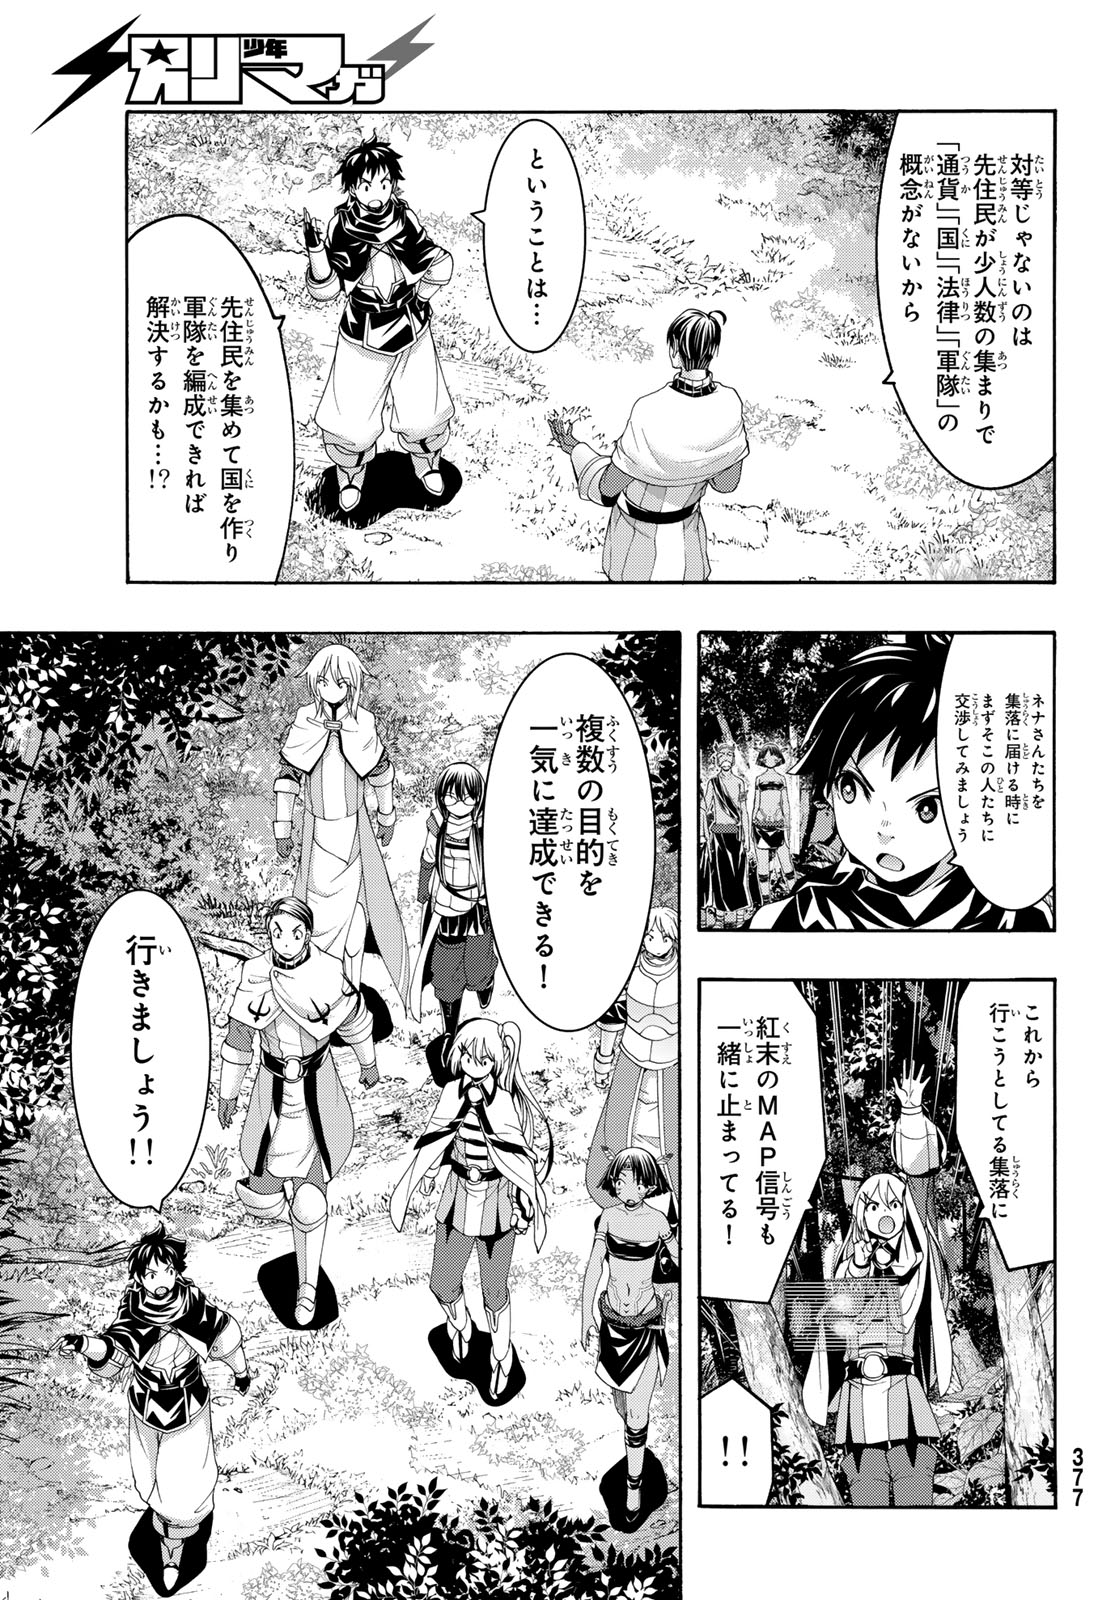 100-man no Inochi no Ue ni Ore wa Tatte Iru - Chapter 93 - Page 3